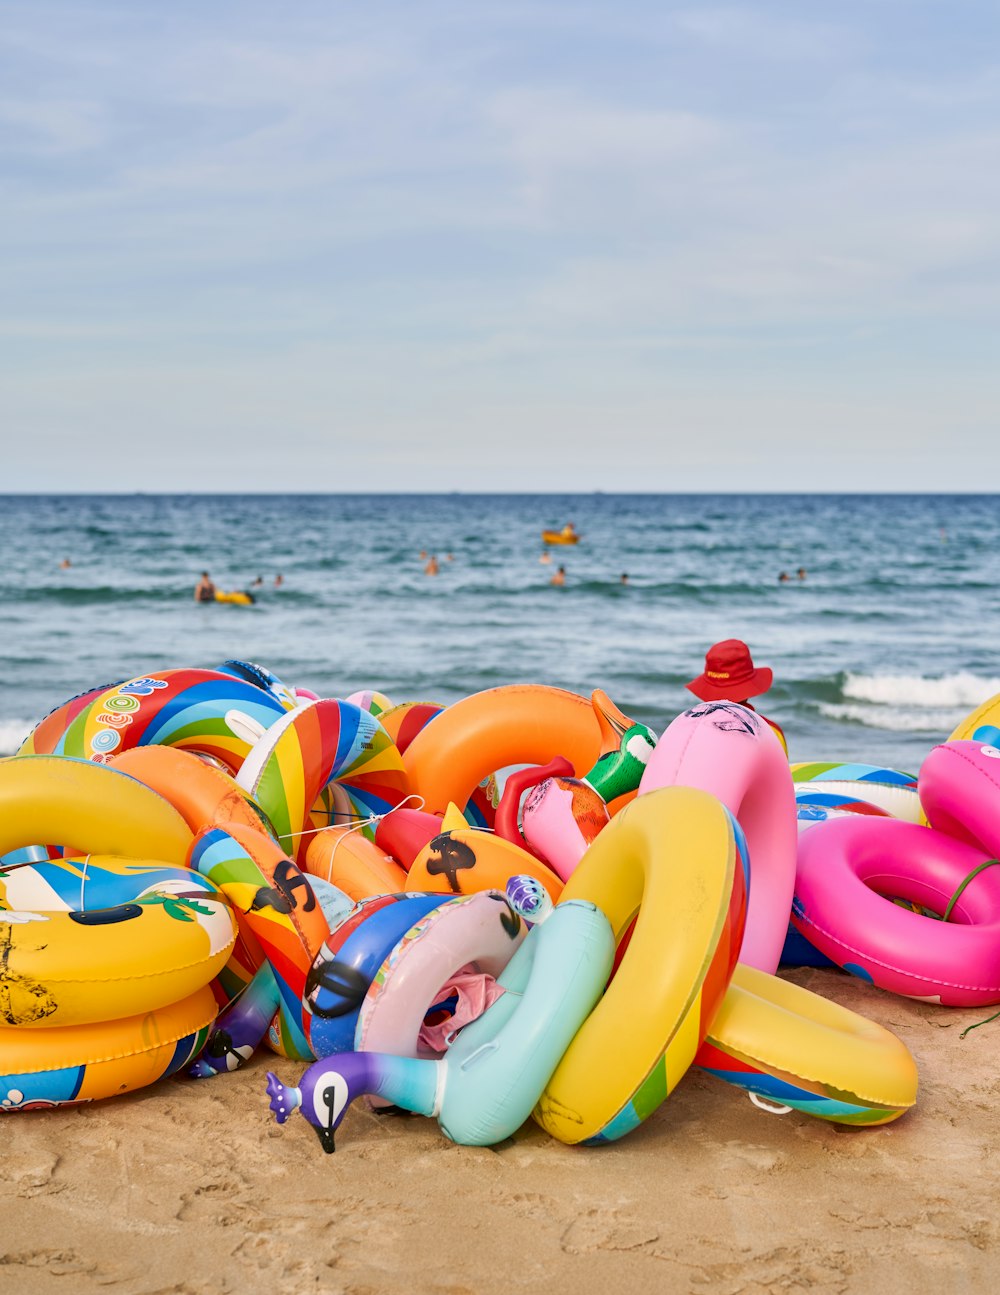 Un grupo de coloridos juguetes de plástico en una playa